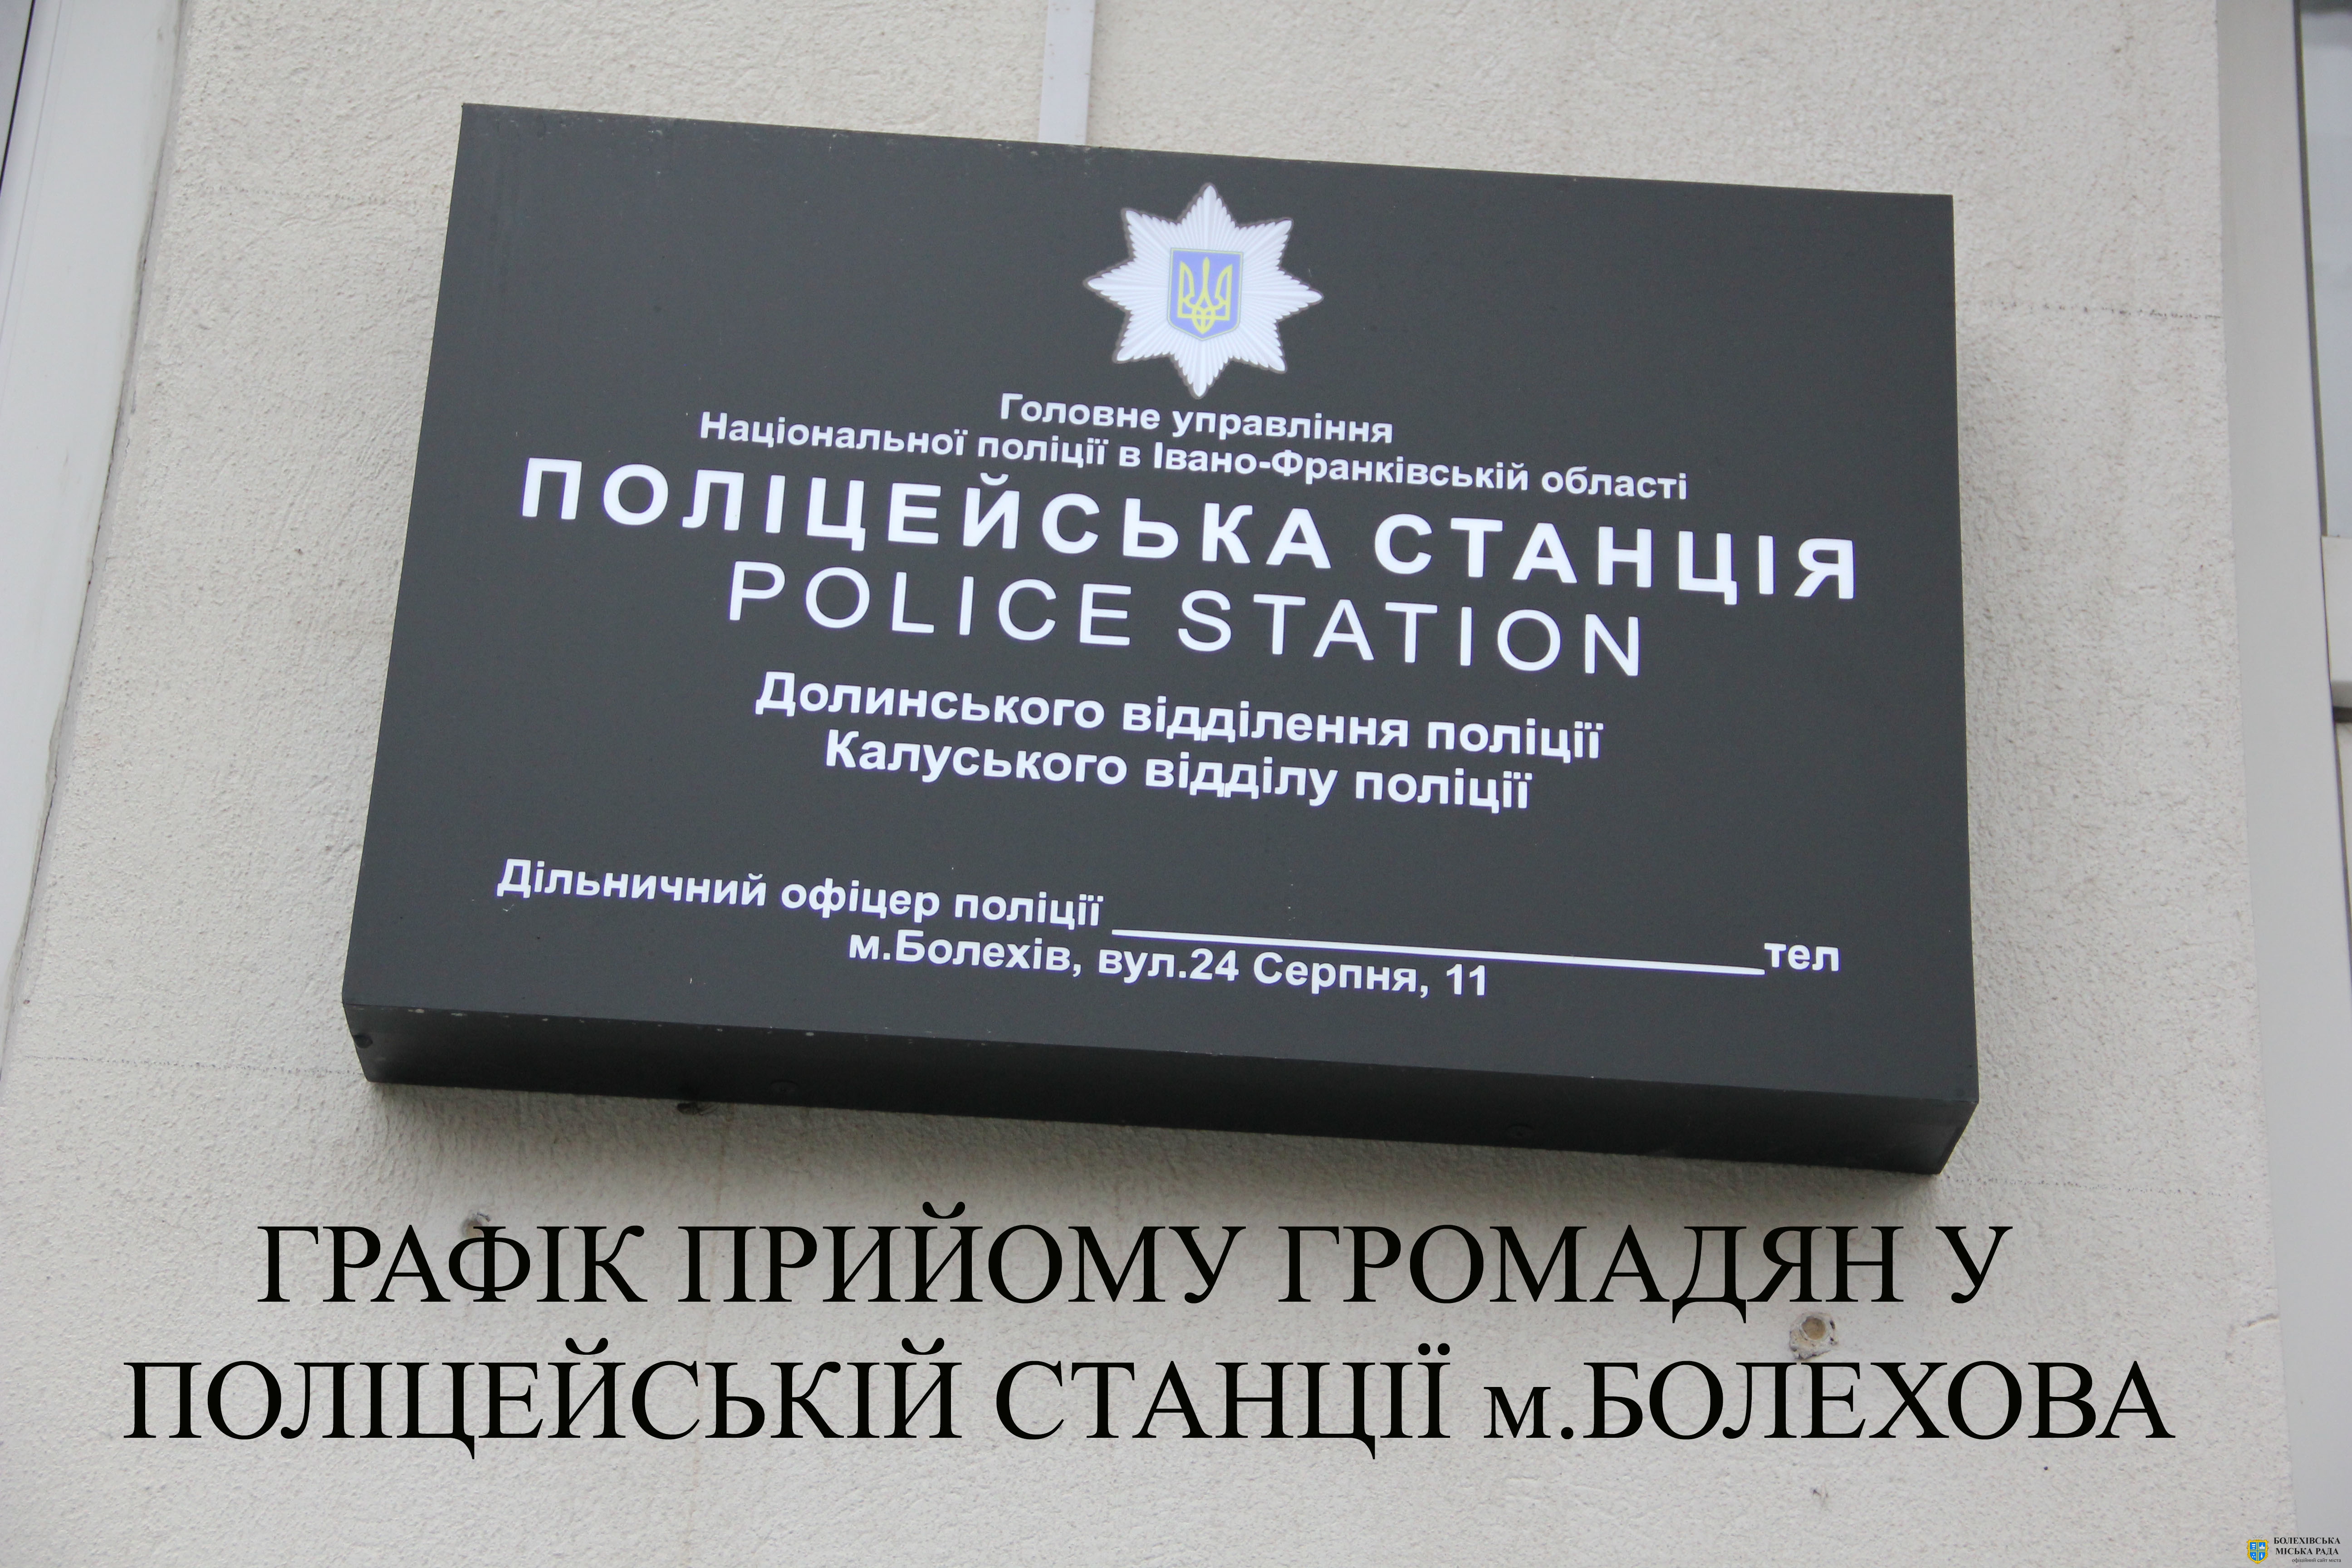 Графік особистого прийому громадян працівниками відділення поліції у поліцейській станції м.Болехова